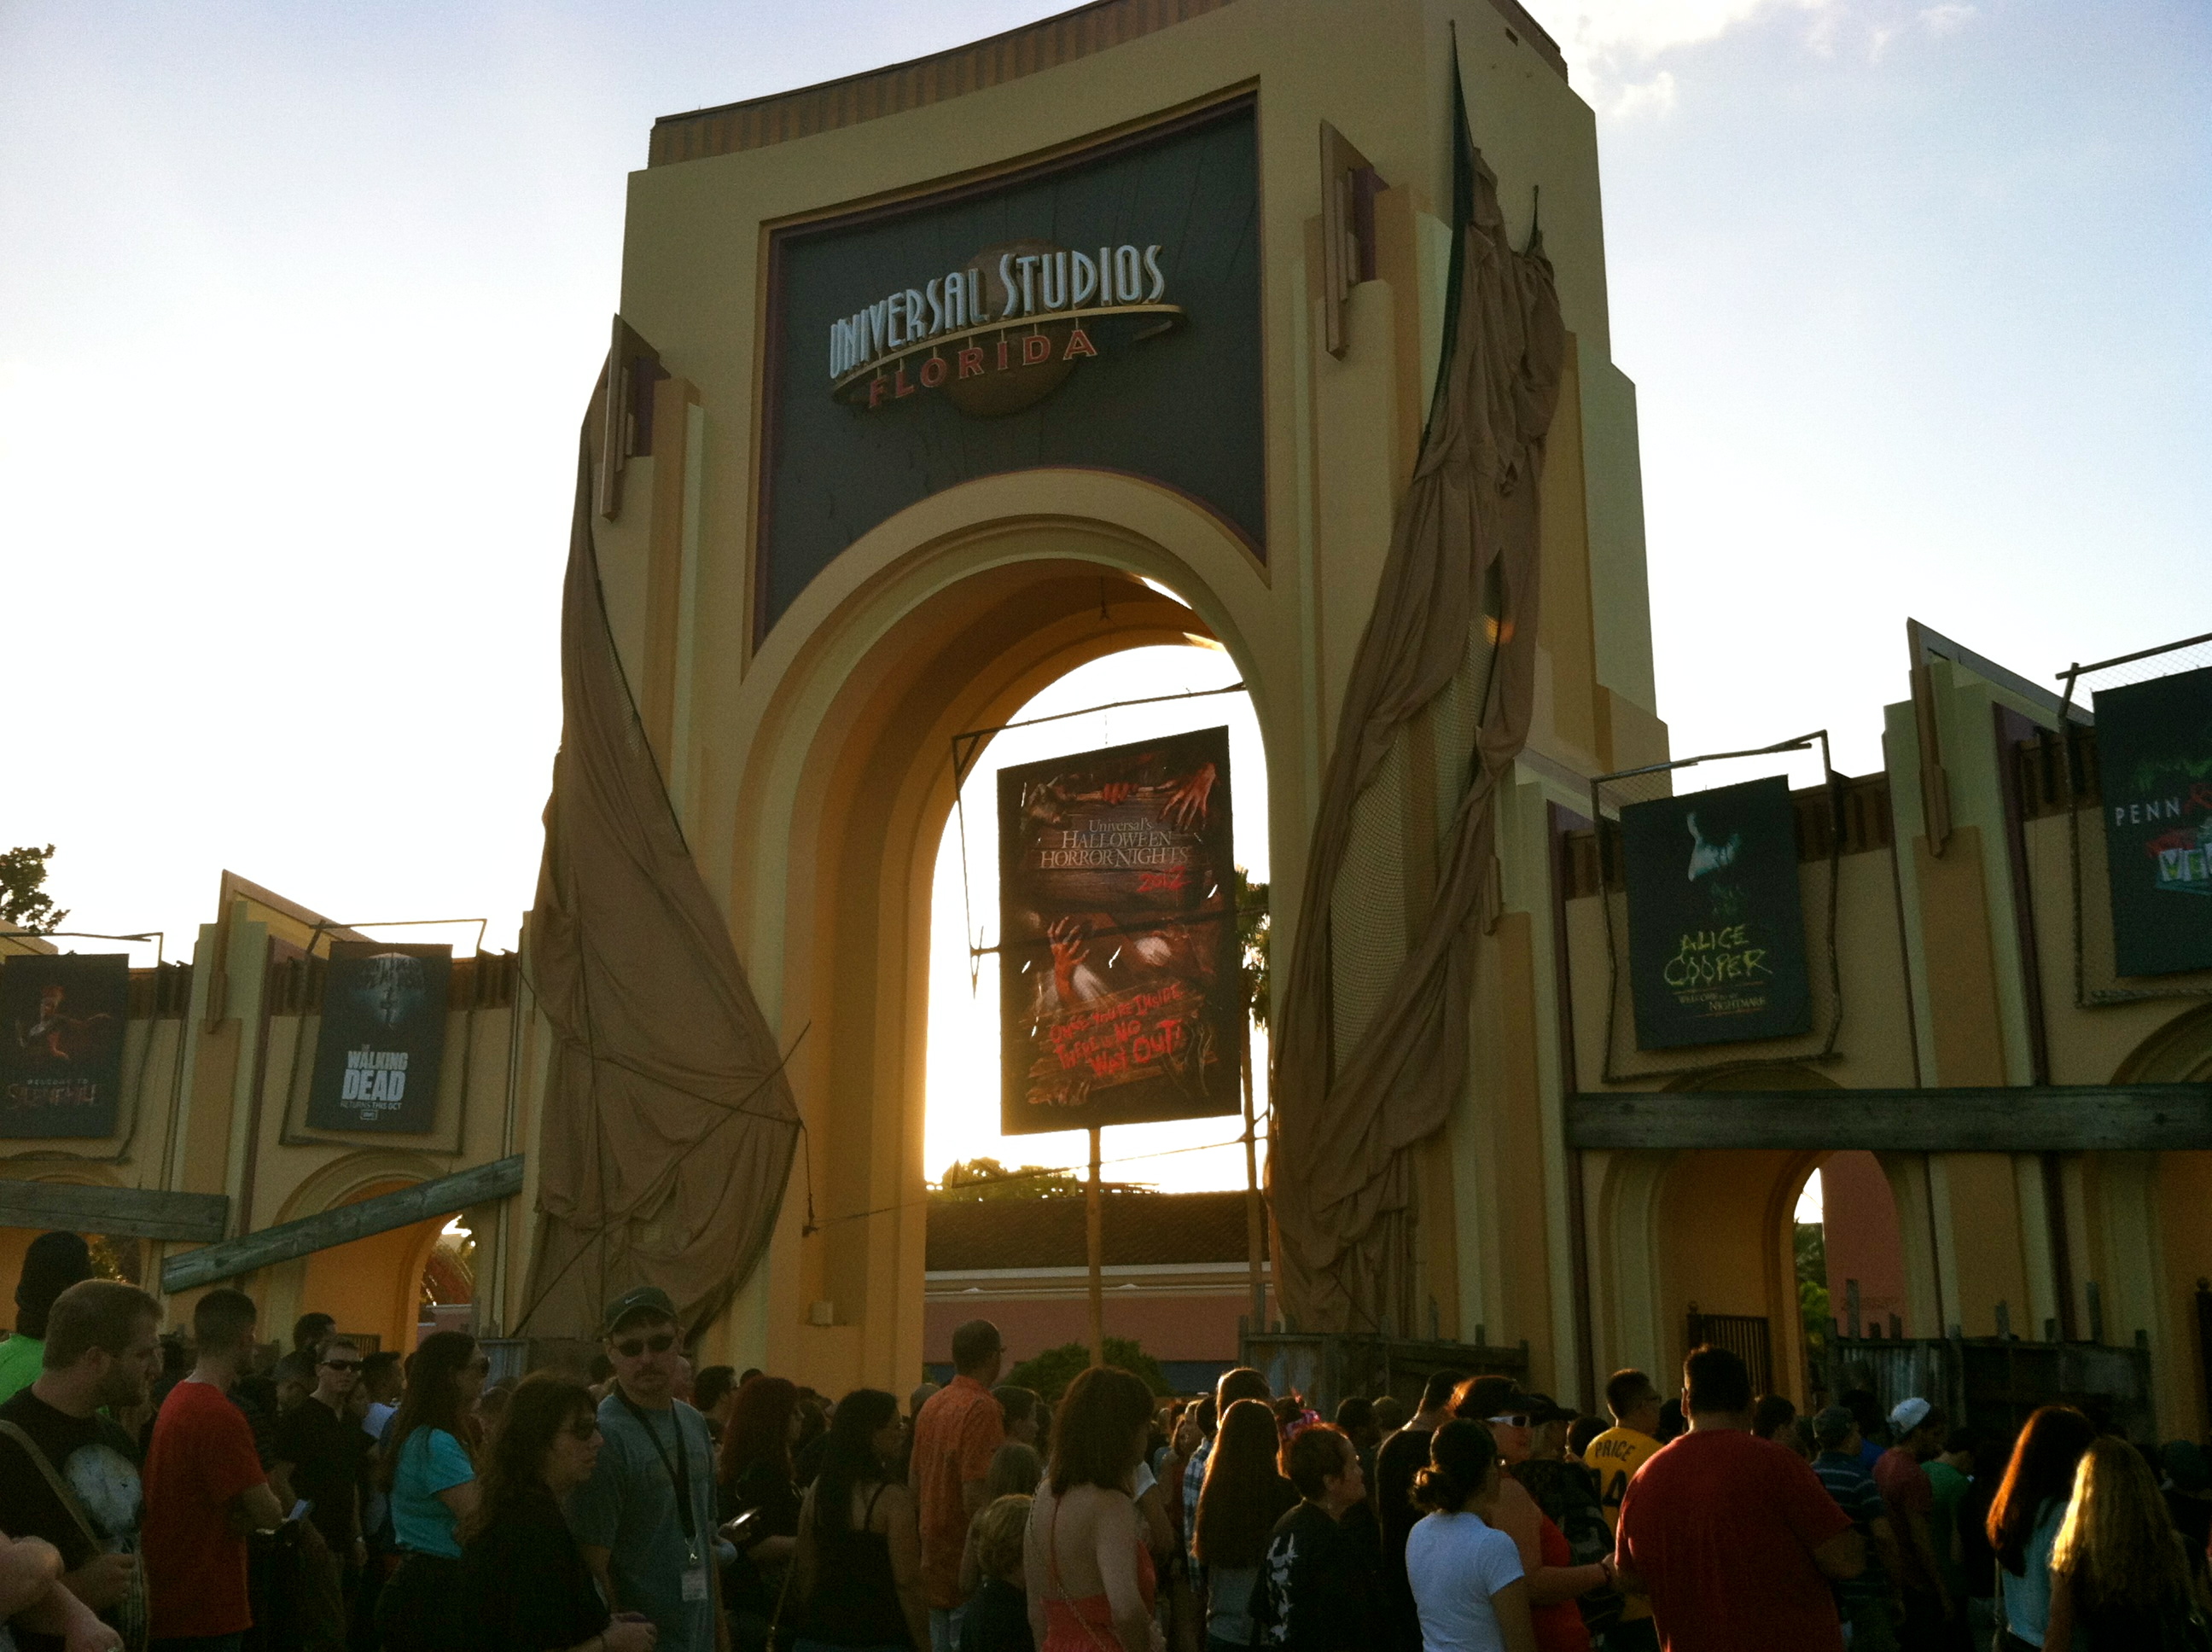 Entrance to Halloween Horror Nights at Universal Studios Orlando Florida (Photo by Elizabeth de Armas).